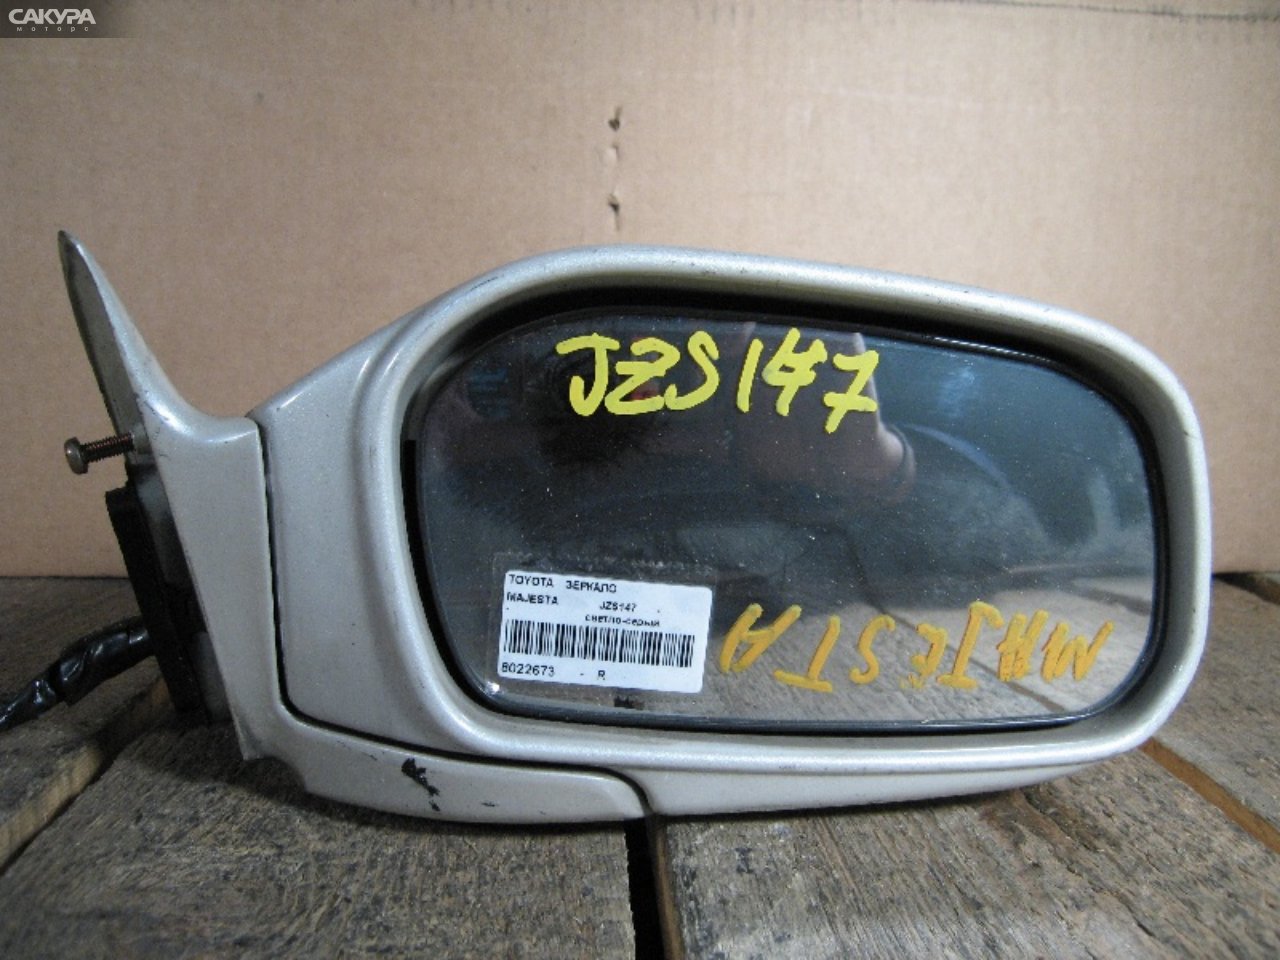 Зеркало боковое правое Toyota Crown Majesta JZS147: купить в Сакура Абакан.